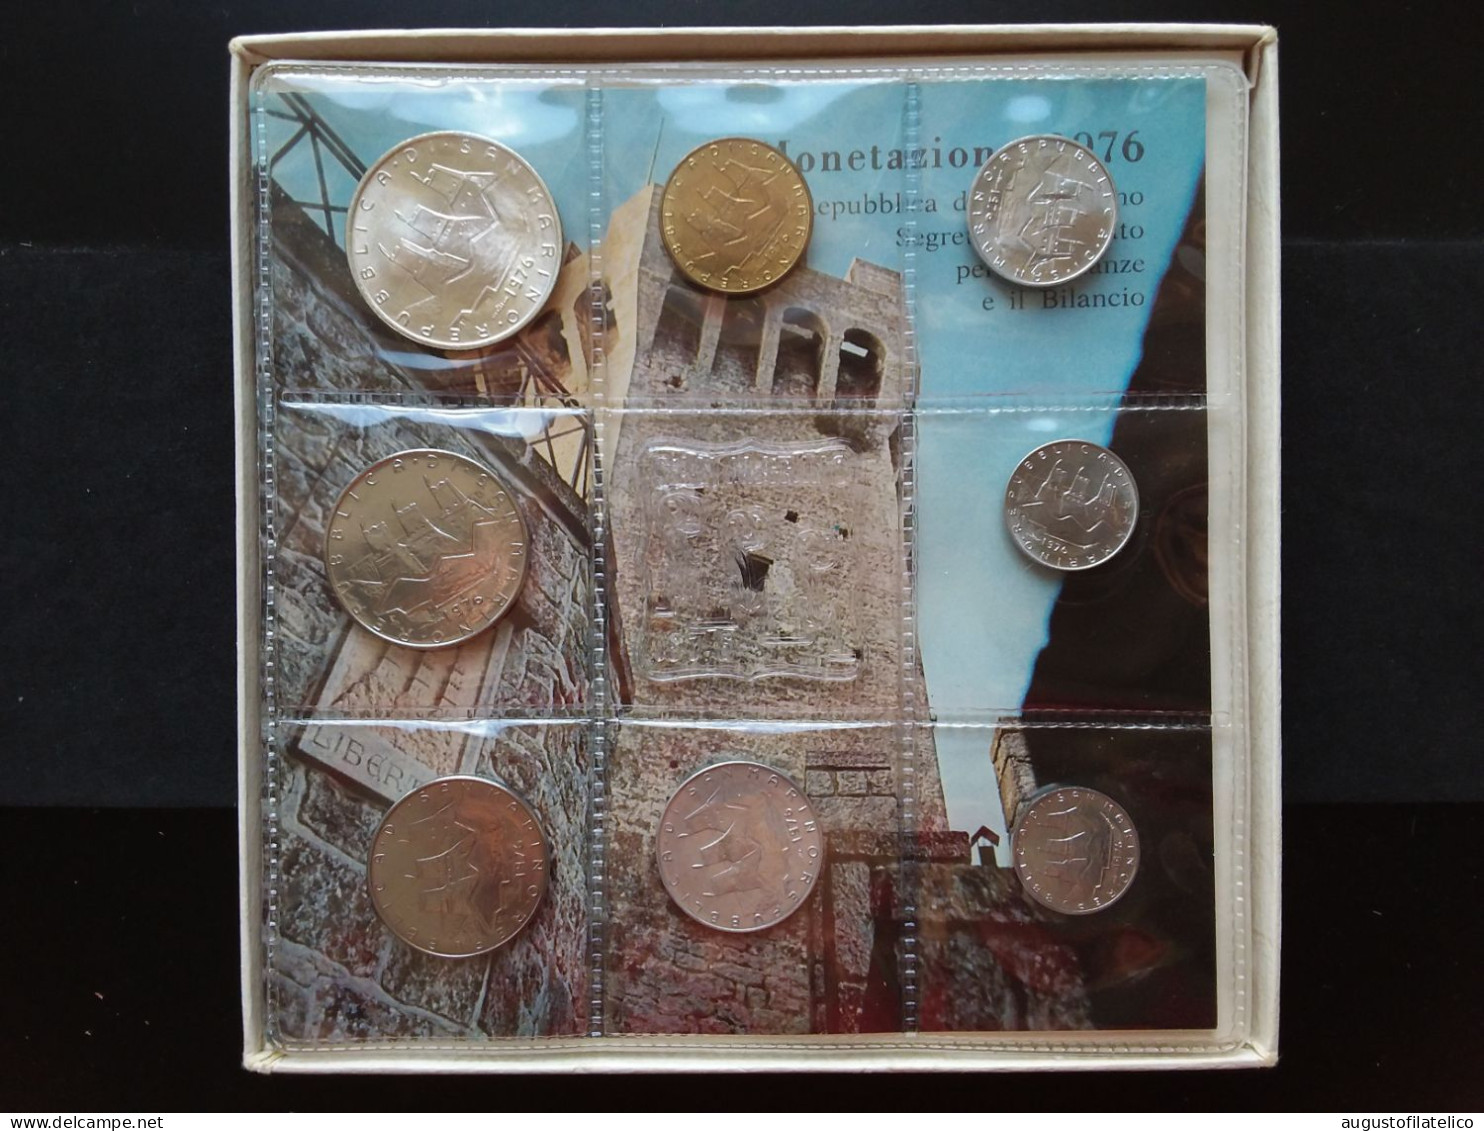 SAN MARINO - Confezione Anno 1976 - F.D.C. + Spese Postali - San Marino